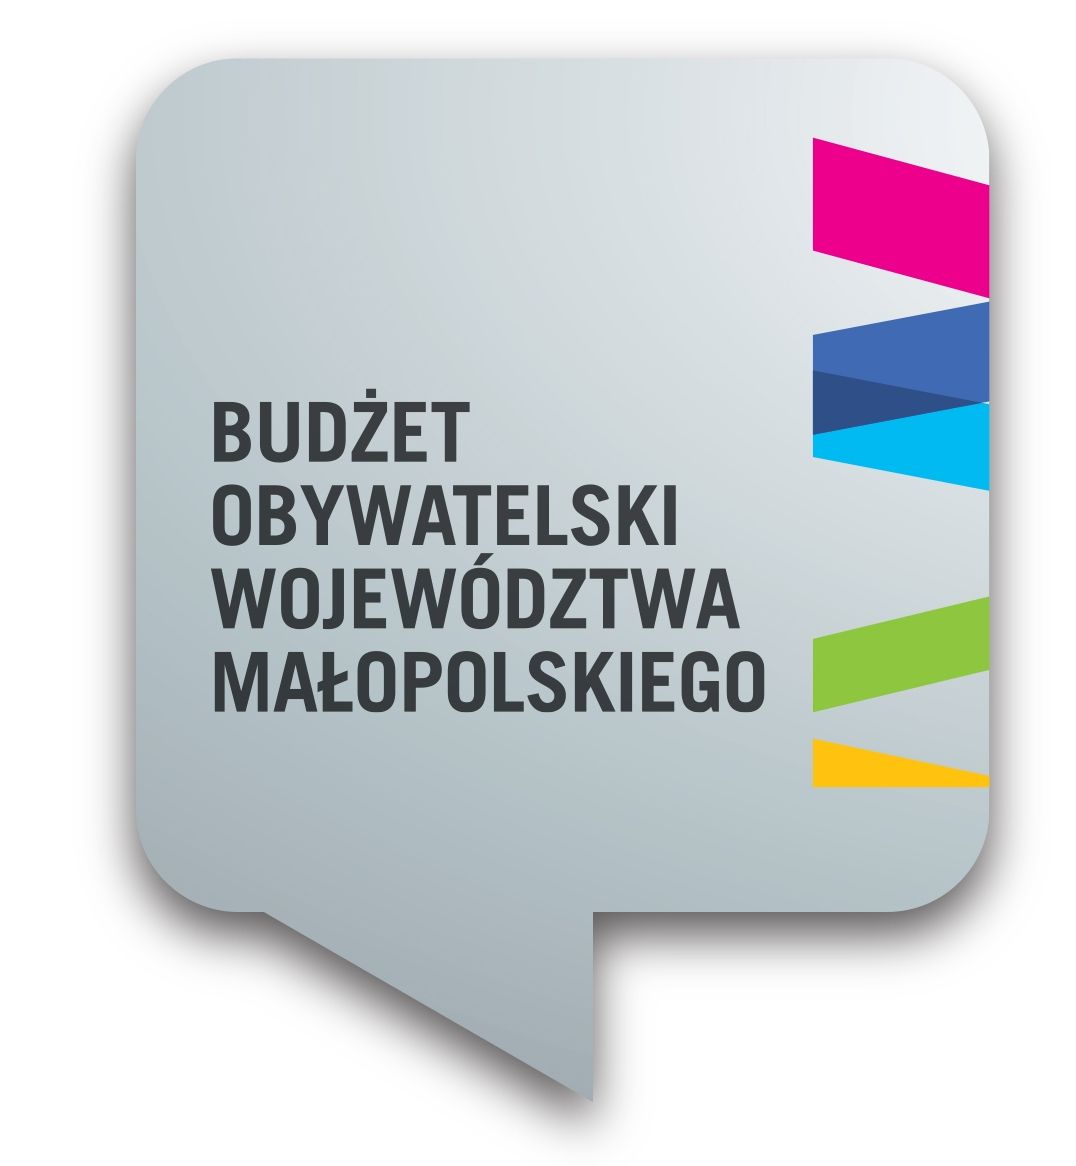 Logotyp budżetu obywatelskiego województwa małopolskiego